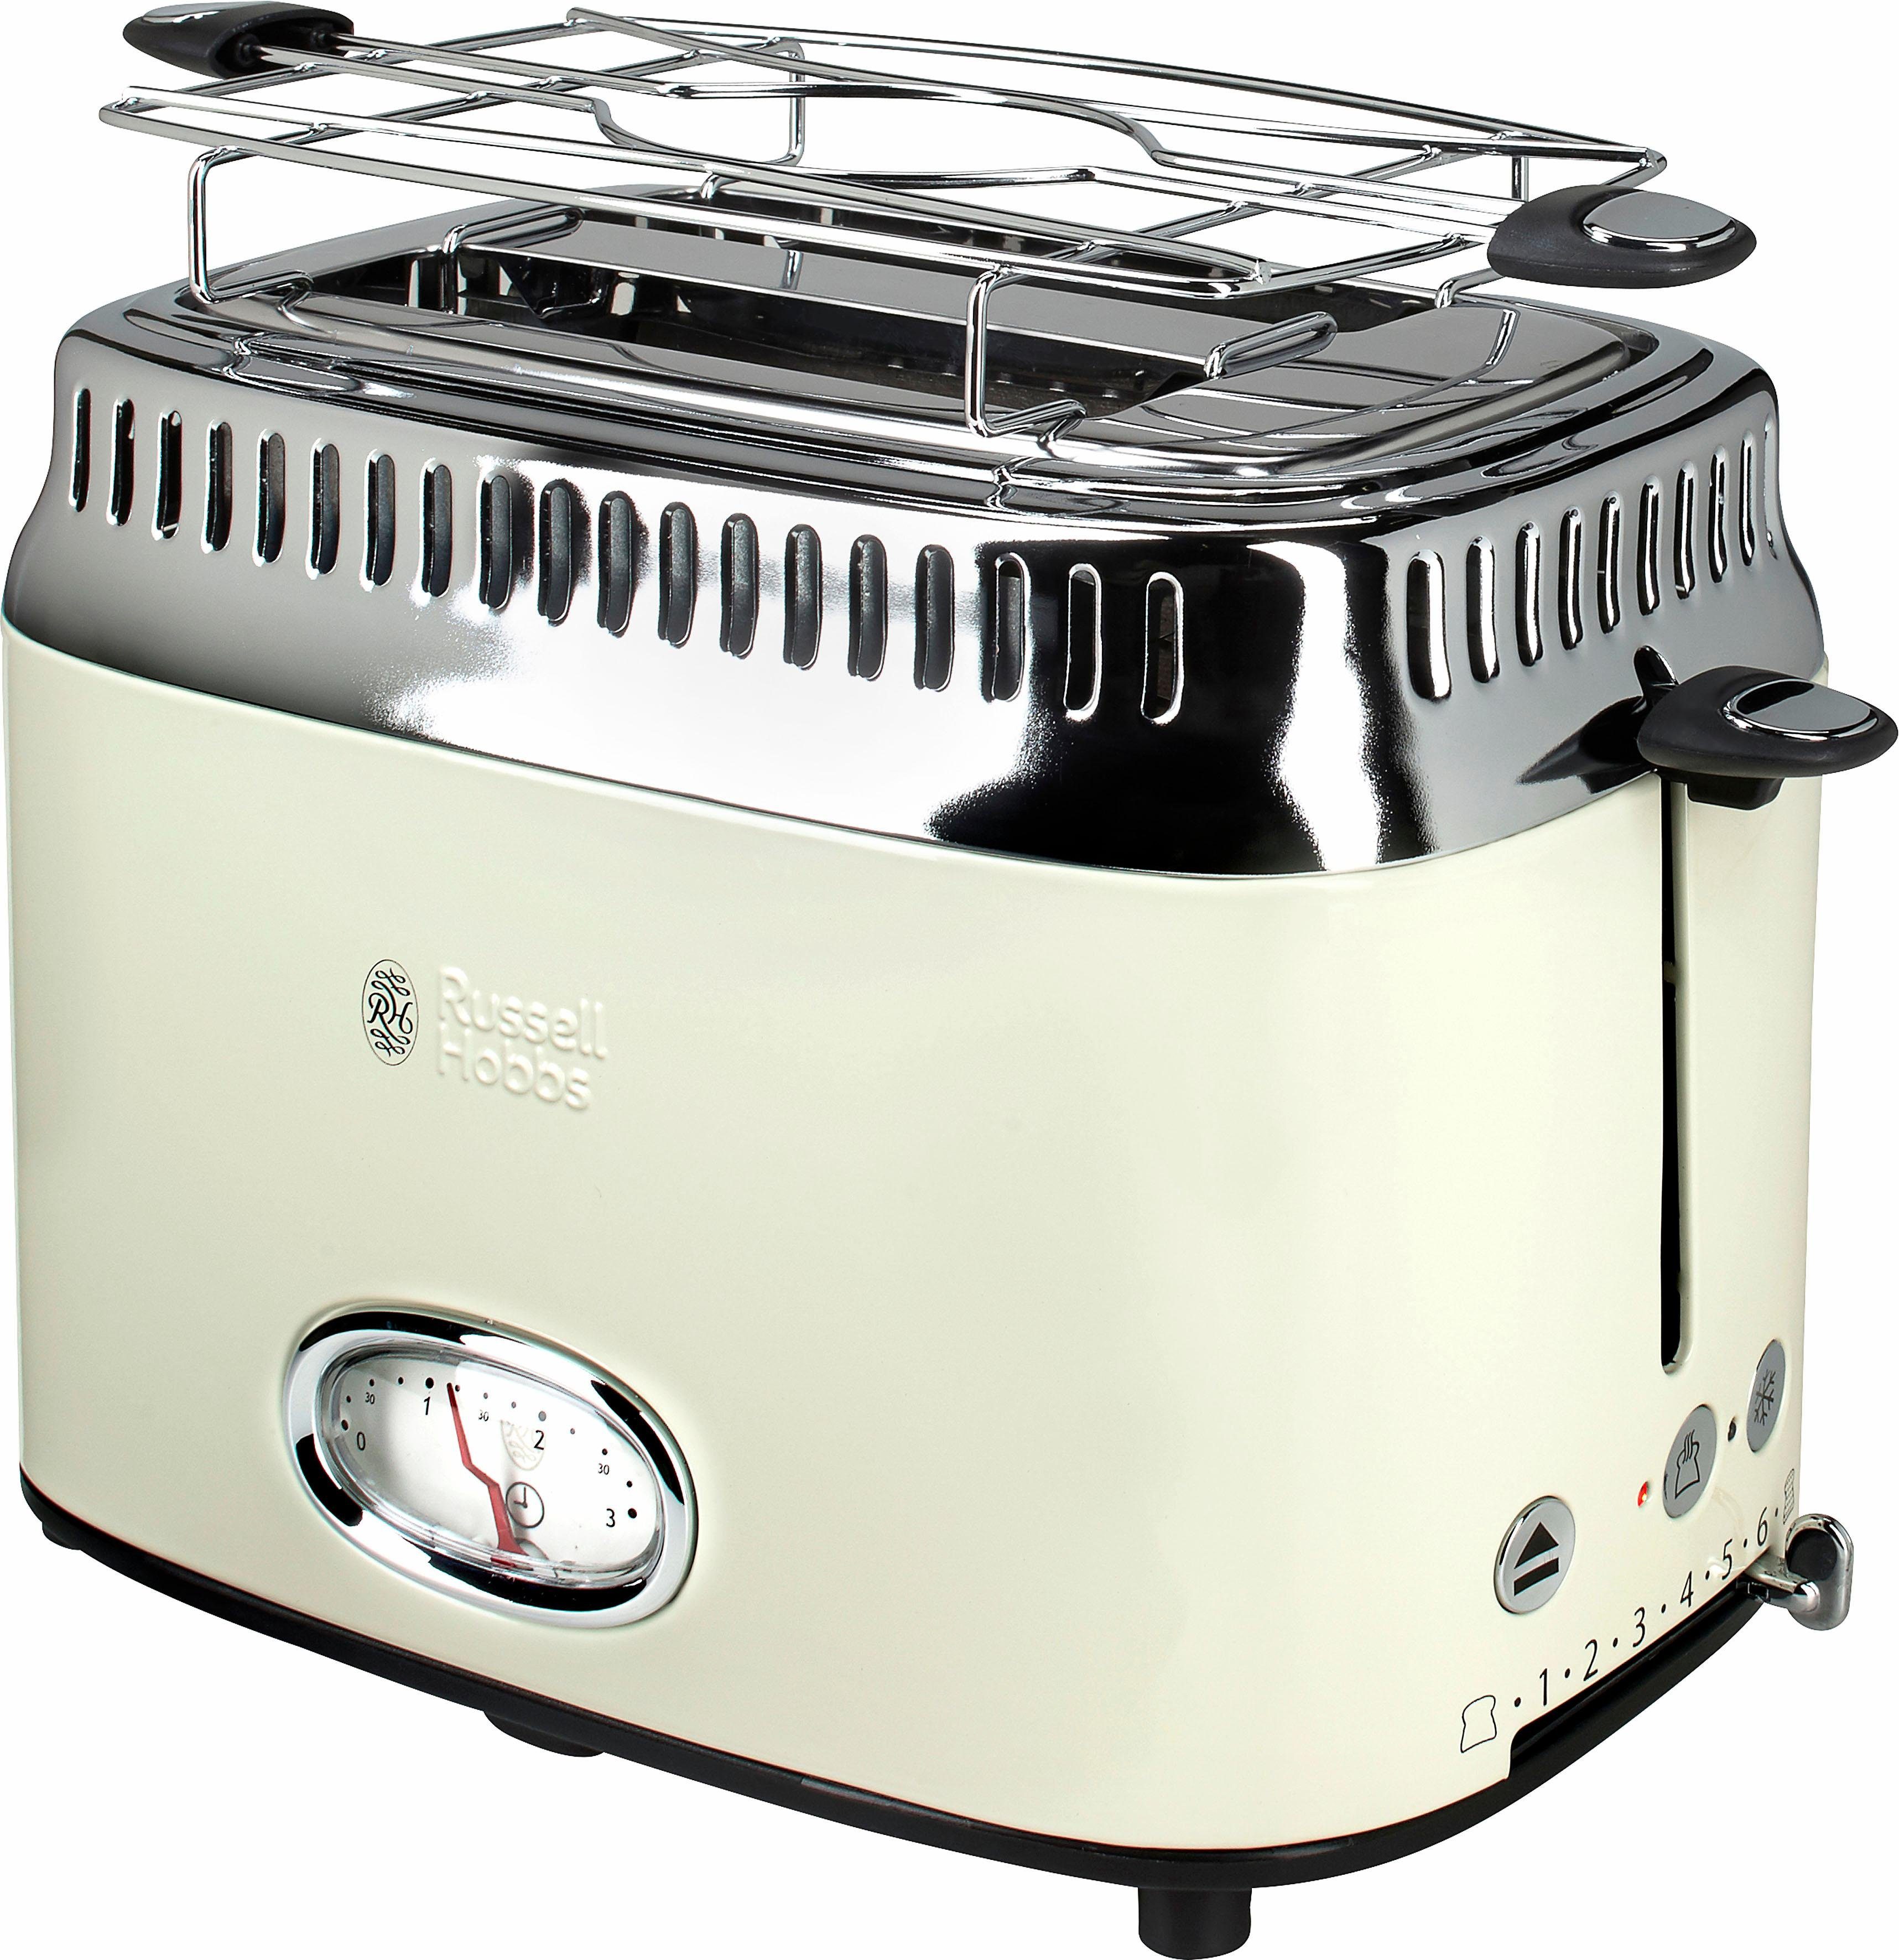 RUSSELL HOBBS Toaster Beige W, Schlitze, Cream kurze 21682-56, 1300 2 Retro Vintage